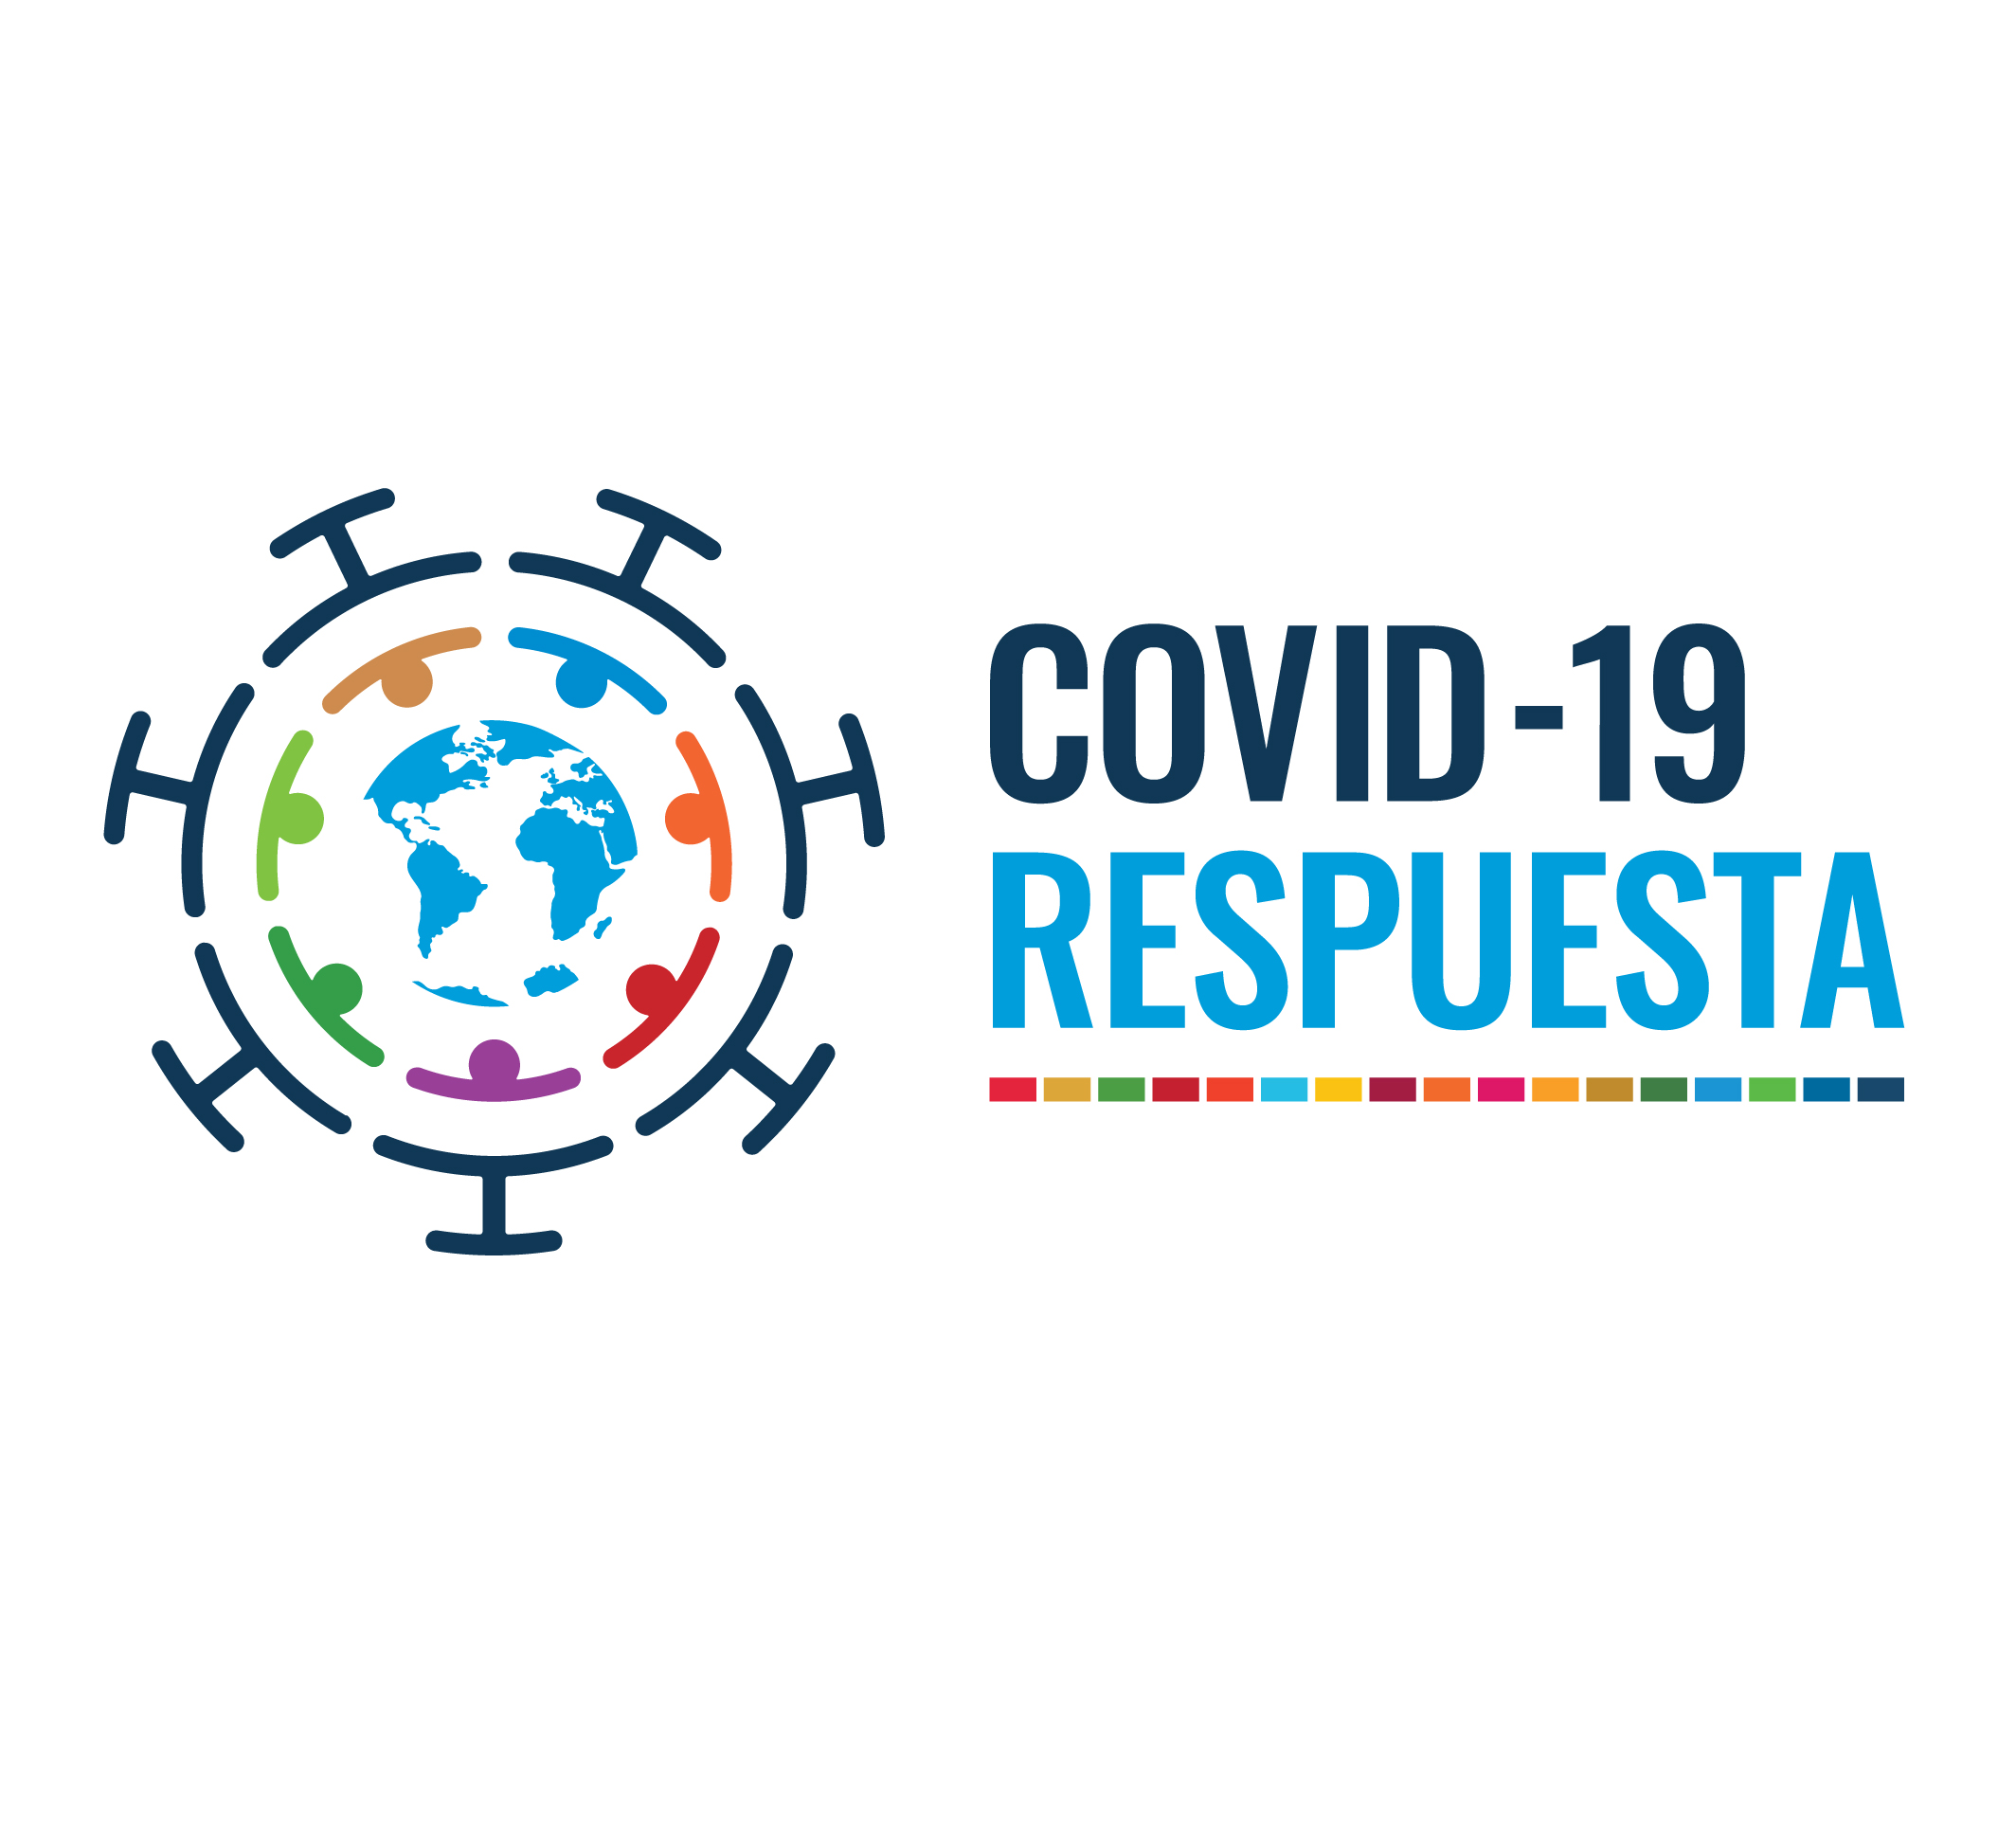 COVID-19 resposta